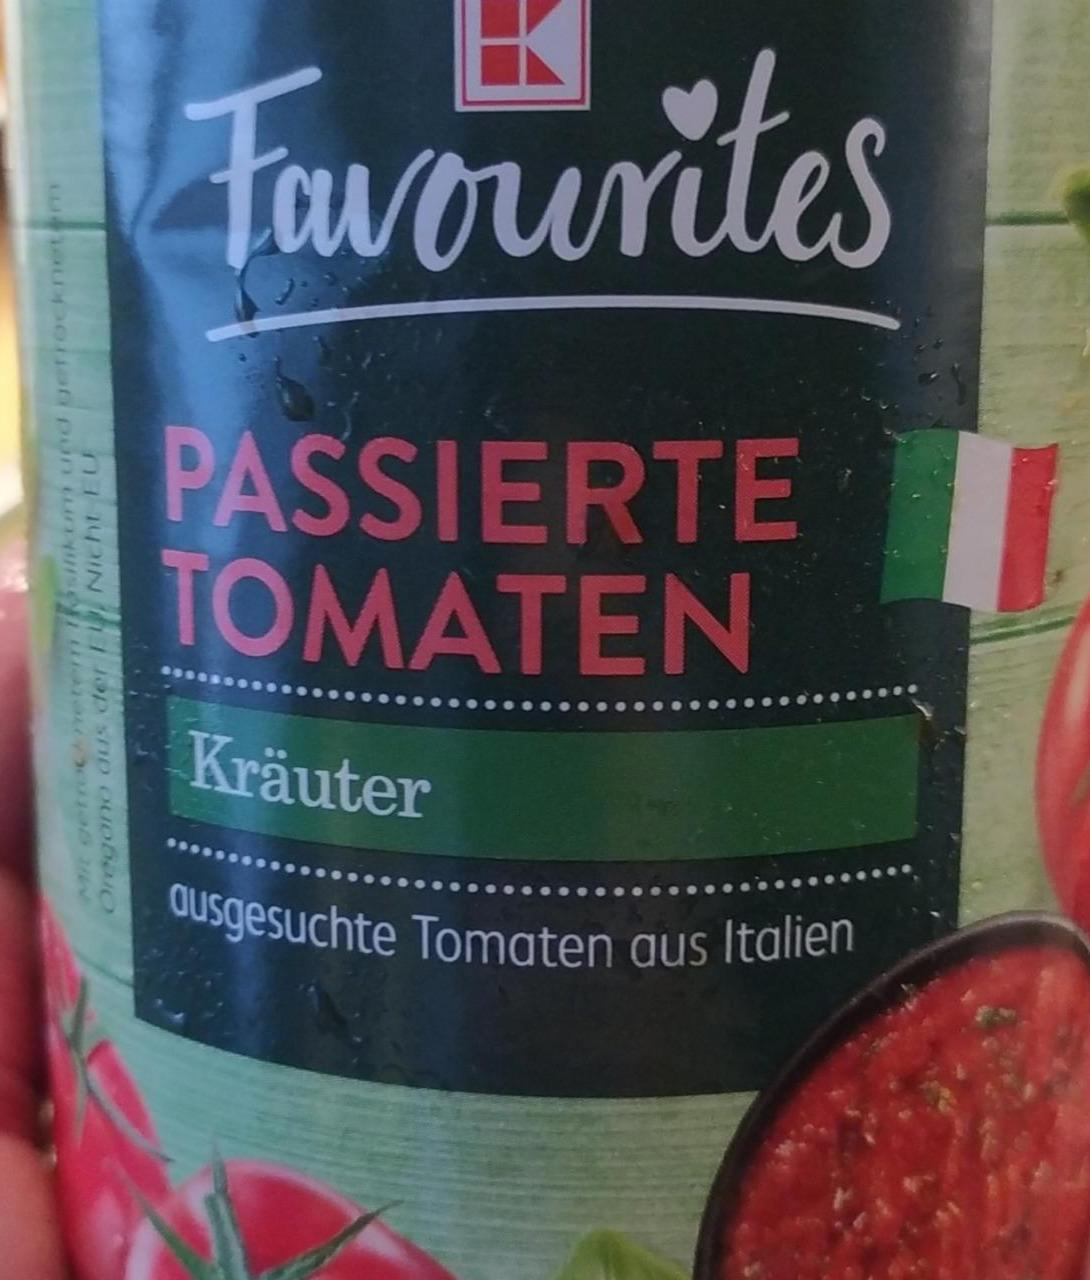 Fotografie - Passierte Tomaten Kräuter K-Favourites